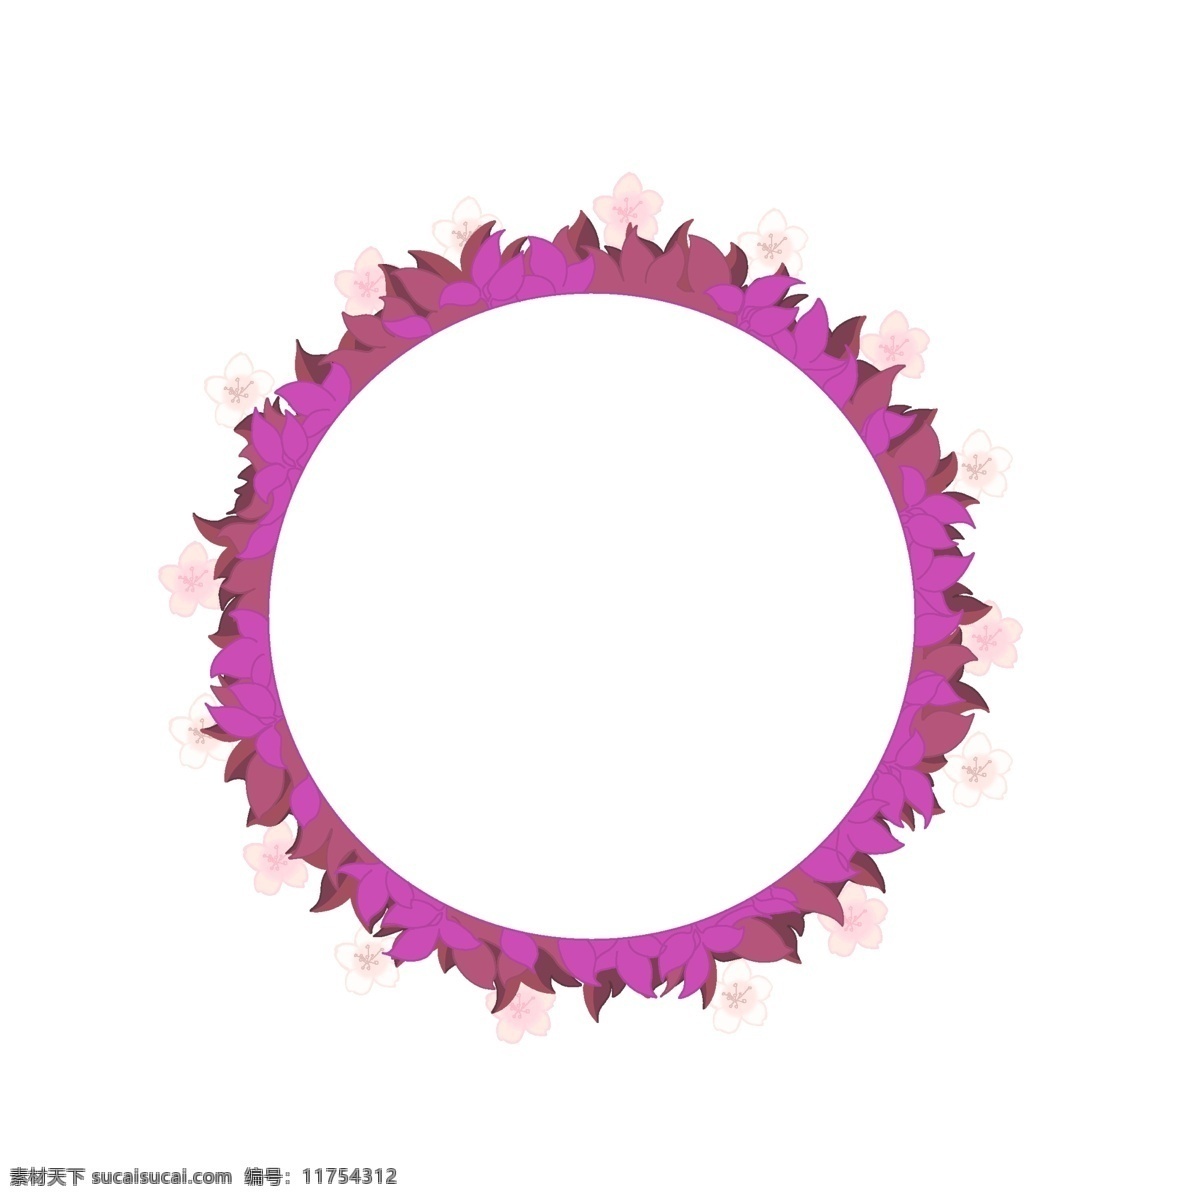 樱花 紫色 树叶 边框 樱花圈 樱花树叶边框 花圈 小清新 圆形边框 浪漫樱花 唯美的边框